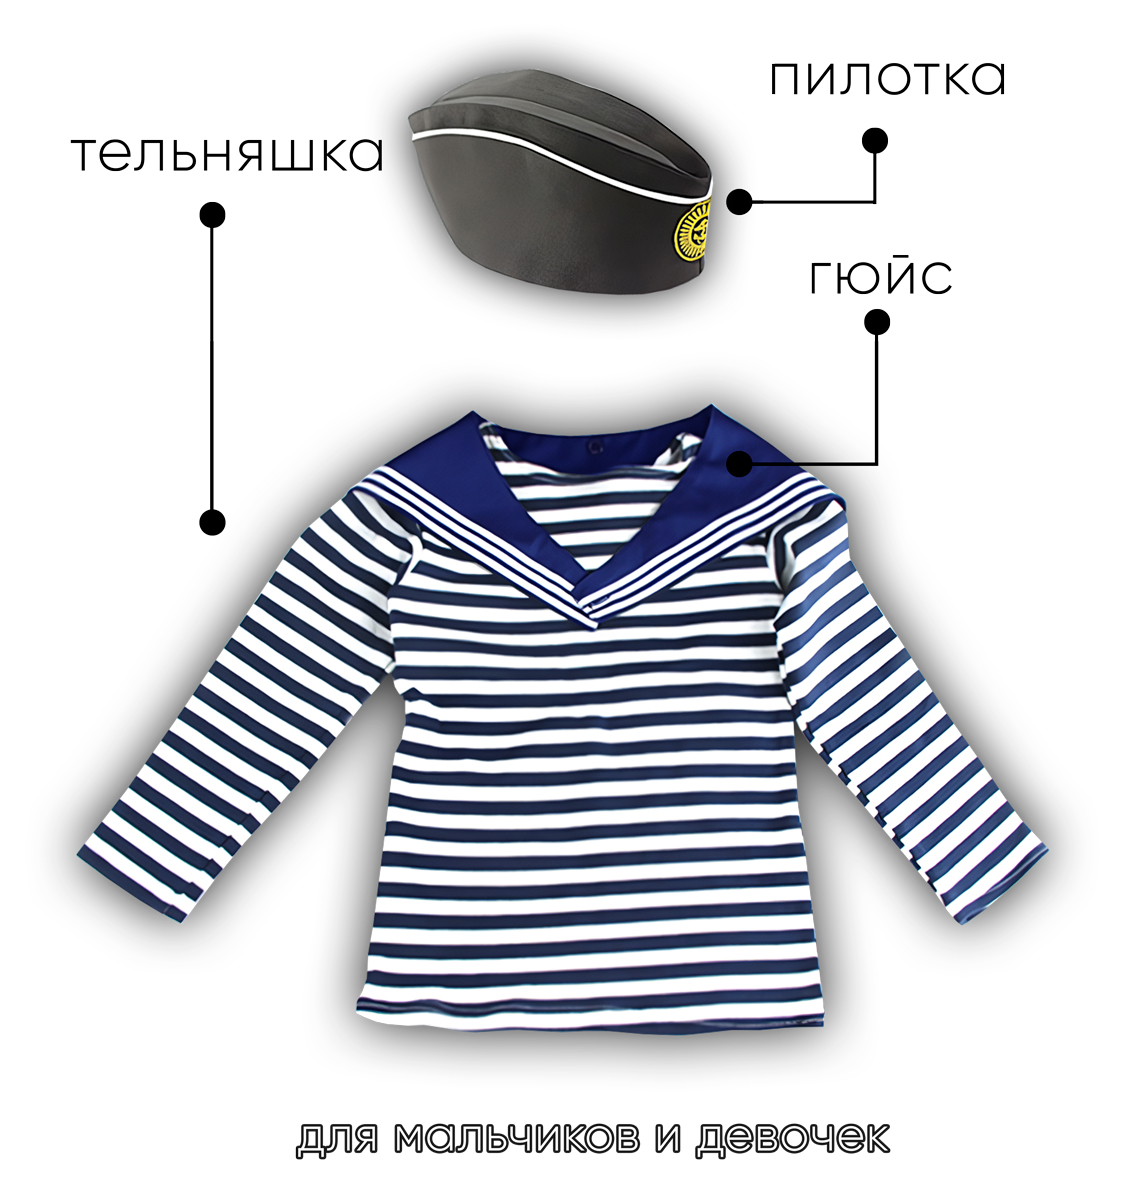 Детский набор матроса для утренника (тельняшка: 32 размер, пилотка детская: 54 размер (на рост 116-122, до 7 лет) и гюйс детский синий)